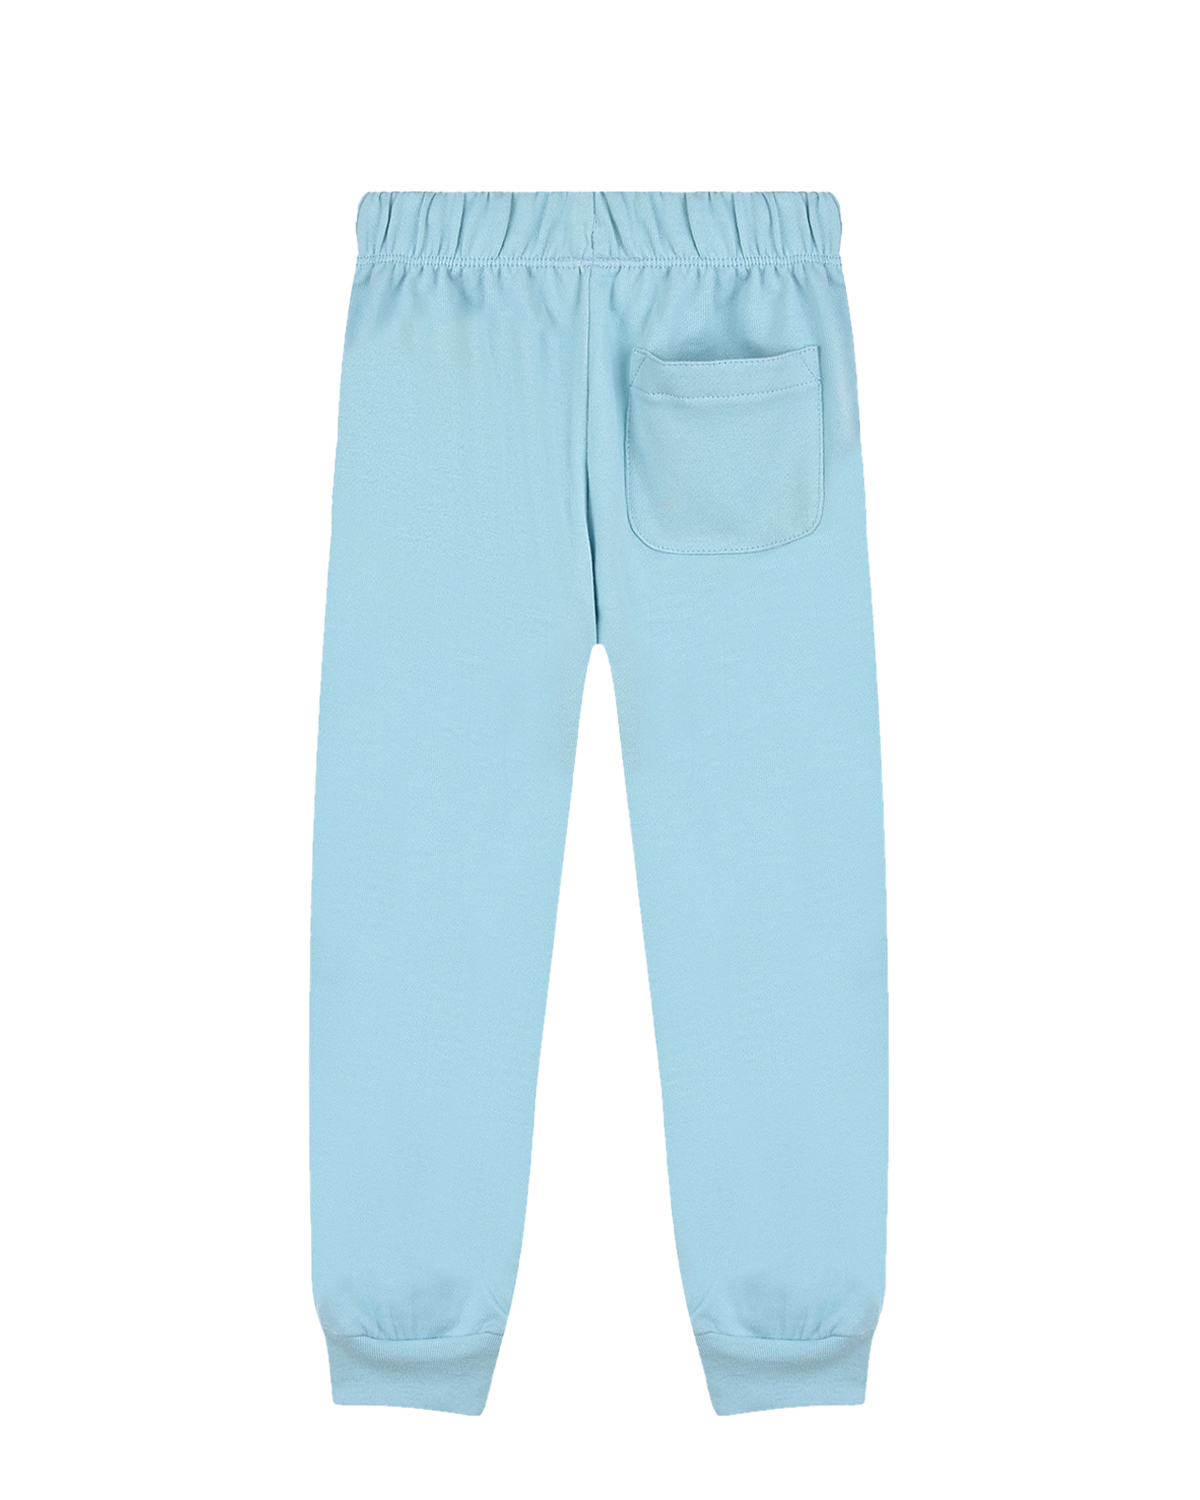 Голубые спортивные брюки Simme Molo детские, размер 80, цвет голубой - фото 2